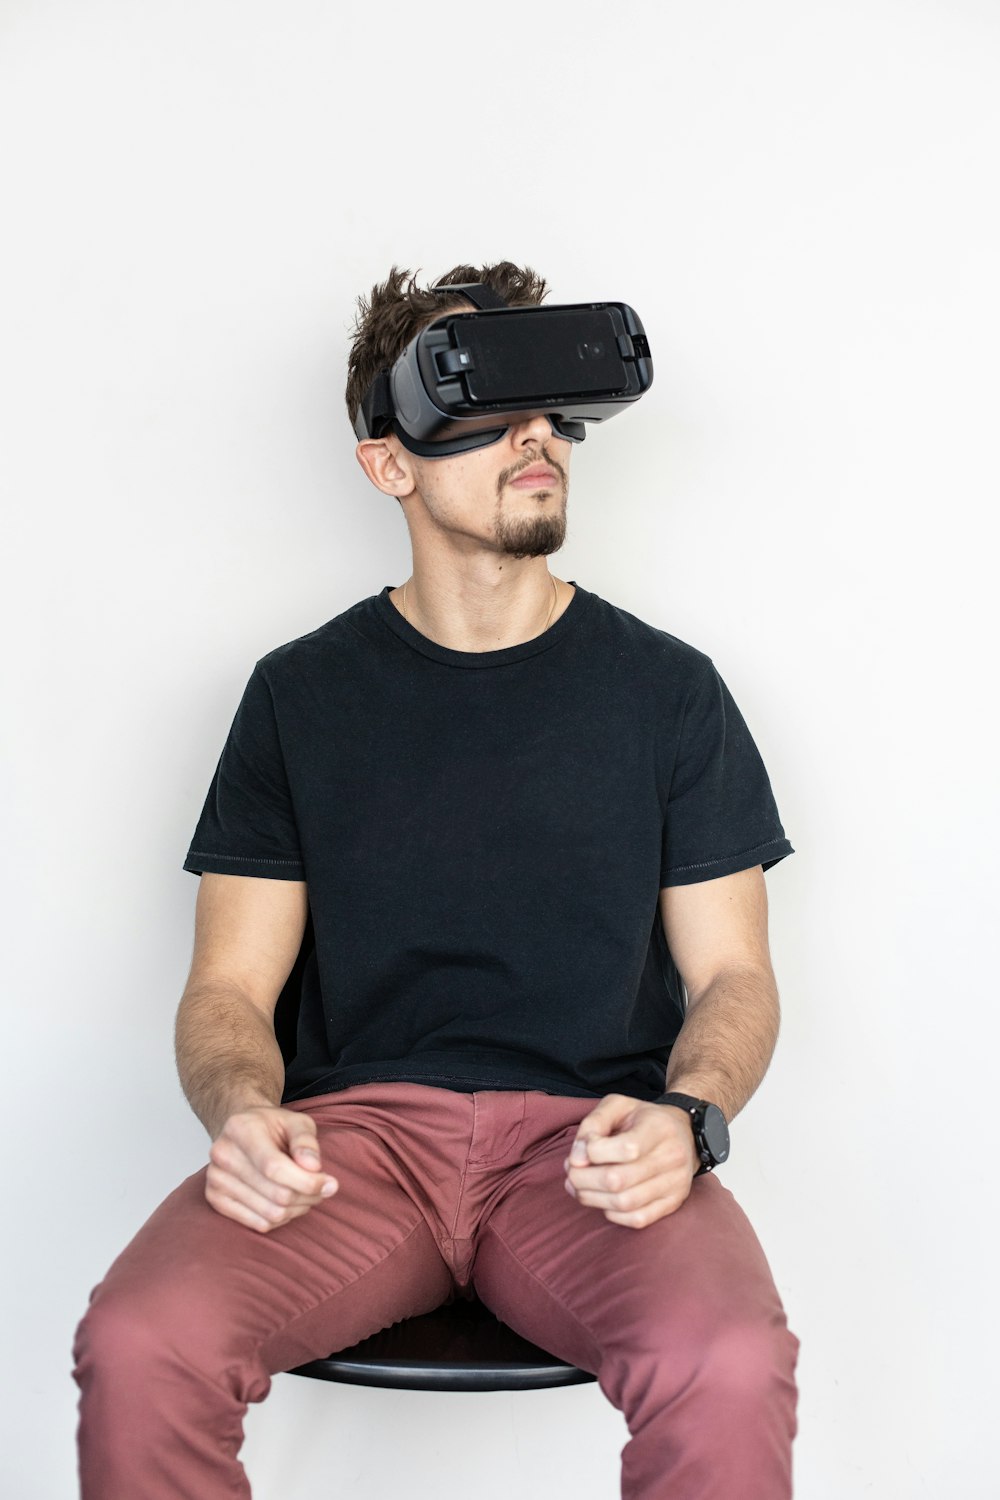 homme assis et utilisant un casque de réalité virtuelle noir